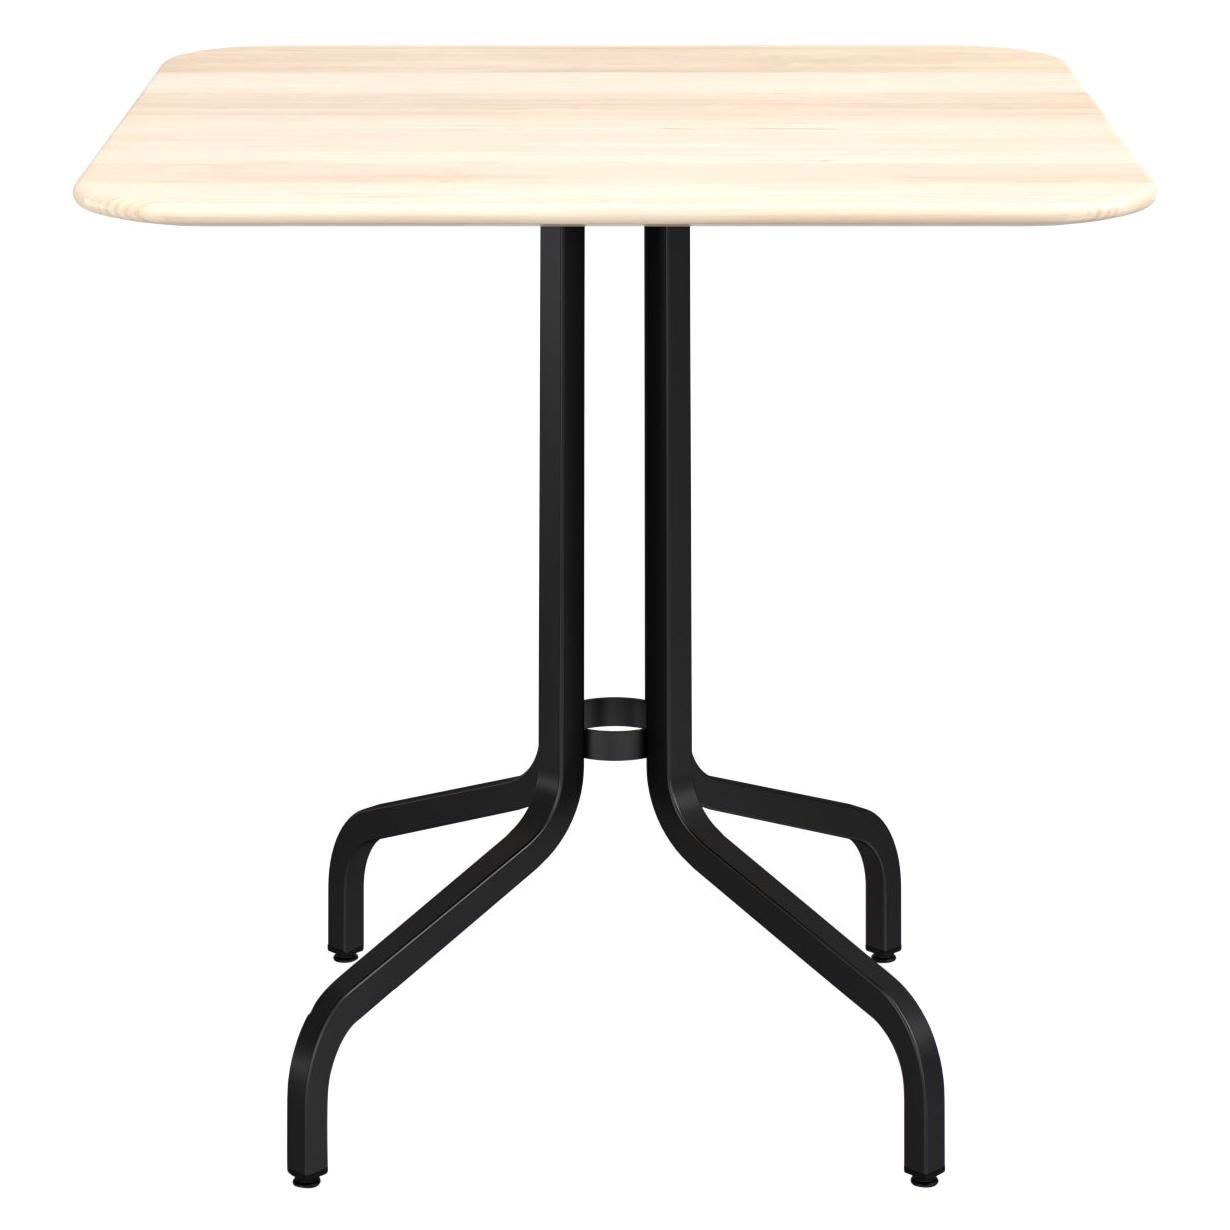 Table basse moyenne Emeco de 2,54 cm avec pieds noirs et plateau en bois par Jasper Morrison